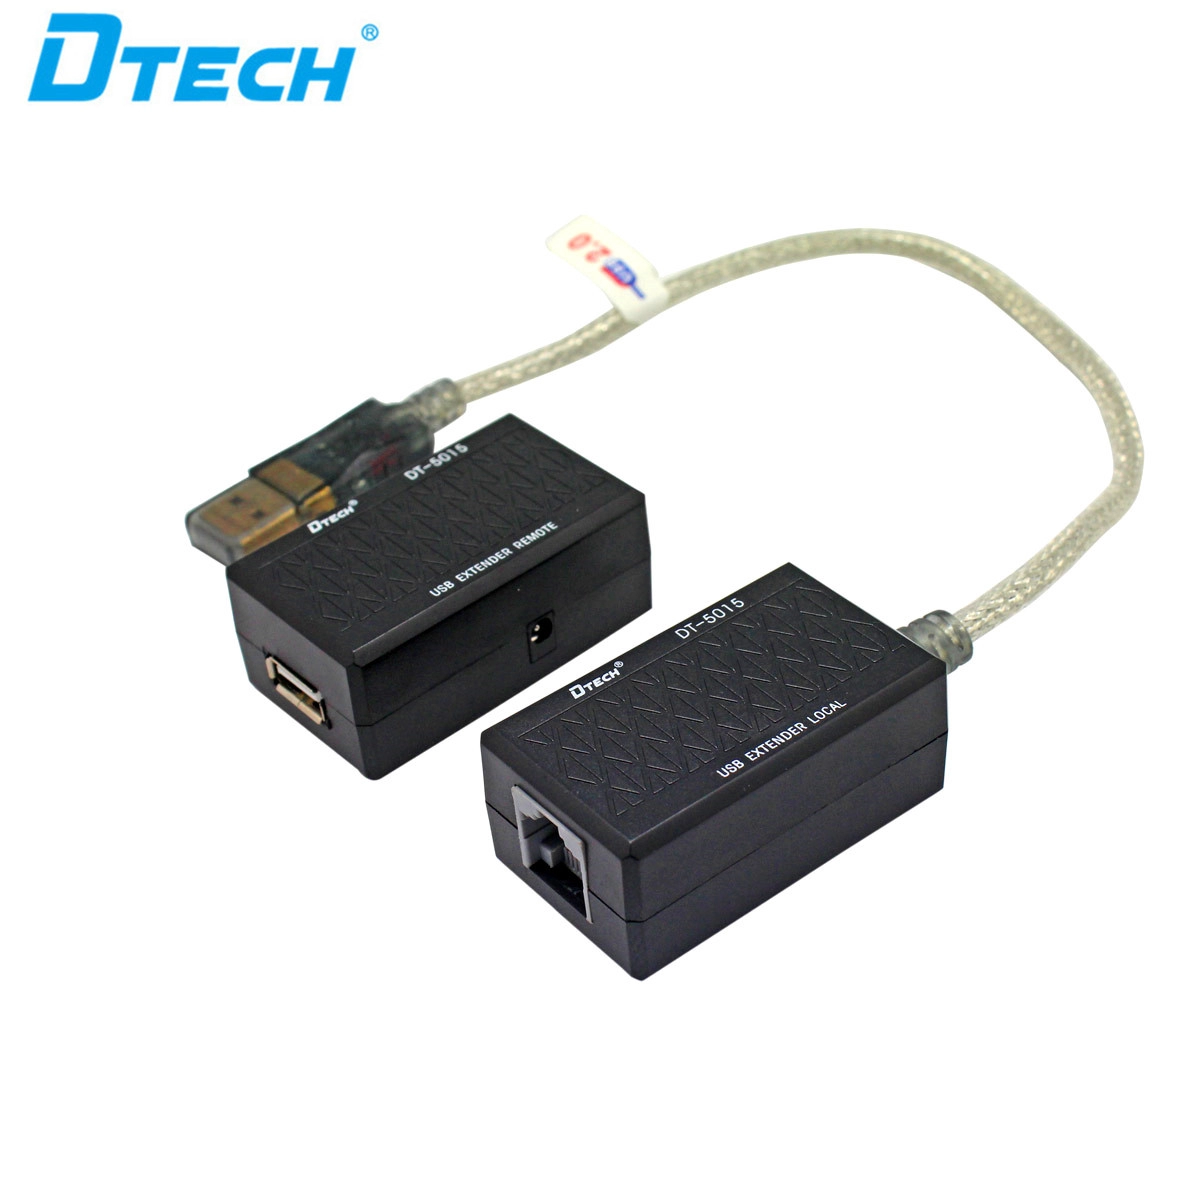 DTECH DT-5015 USB-удлинитель на 60 м по сетевому кабелю